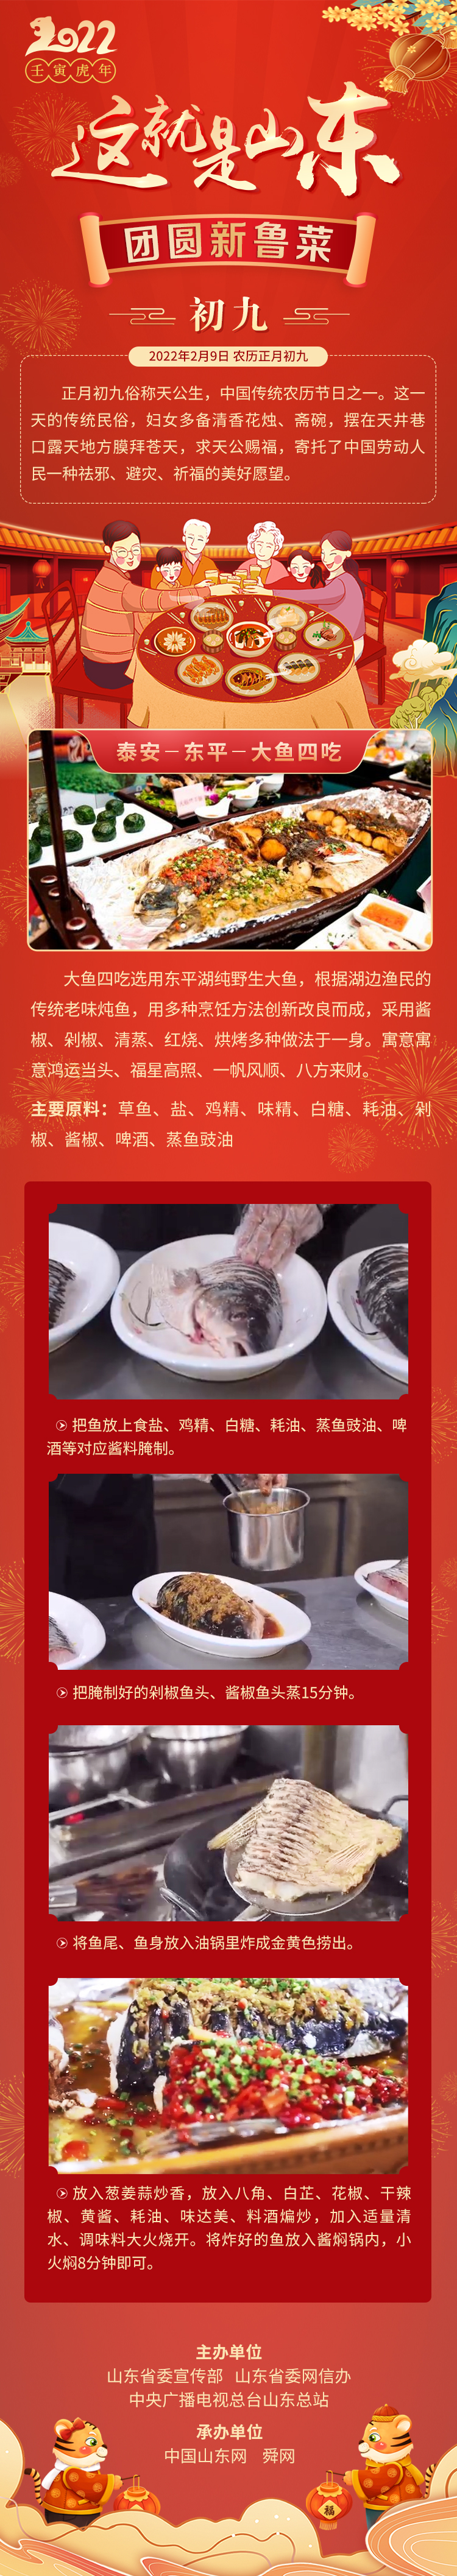 这就是山东·团圆新鲁菜——泰安-东平-大鱼四吃